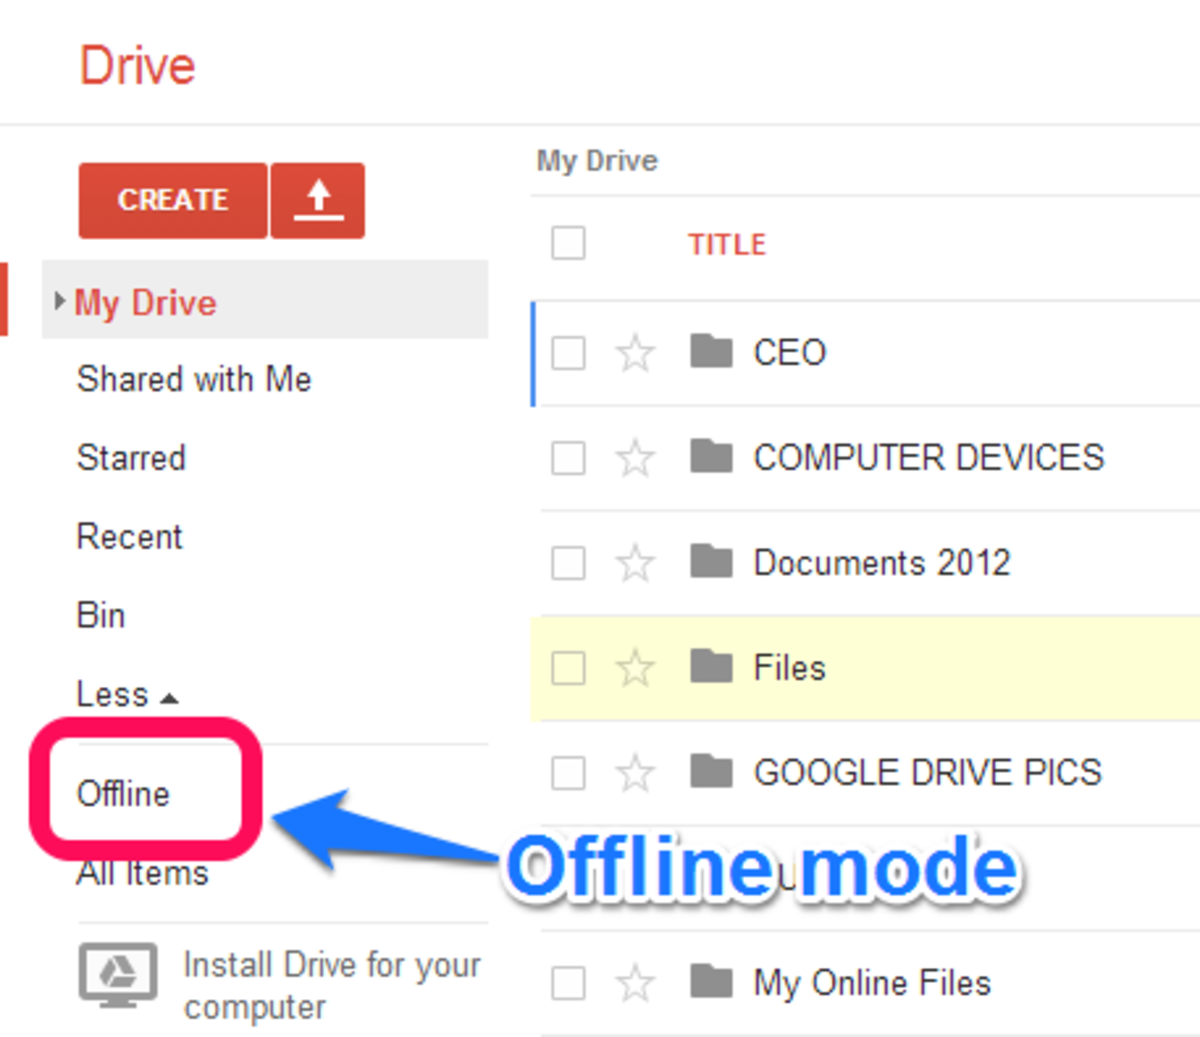 Google Drive offline mode